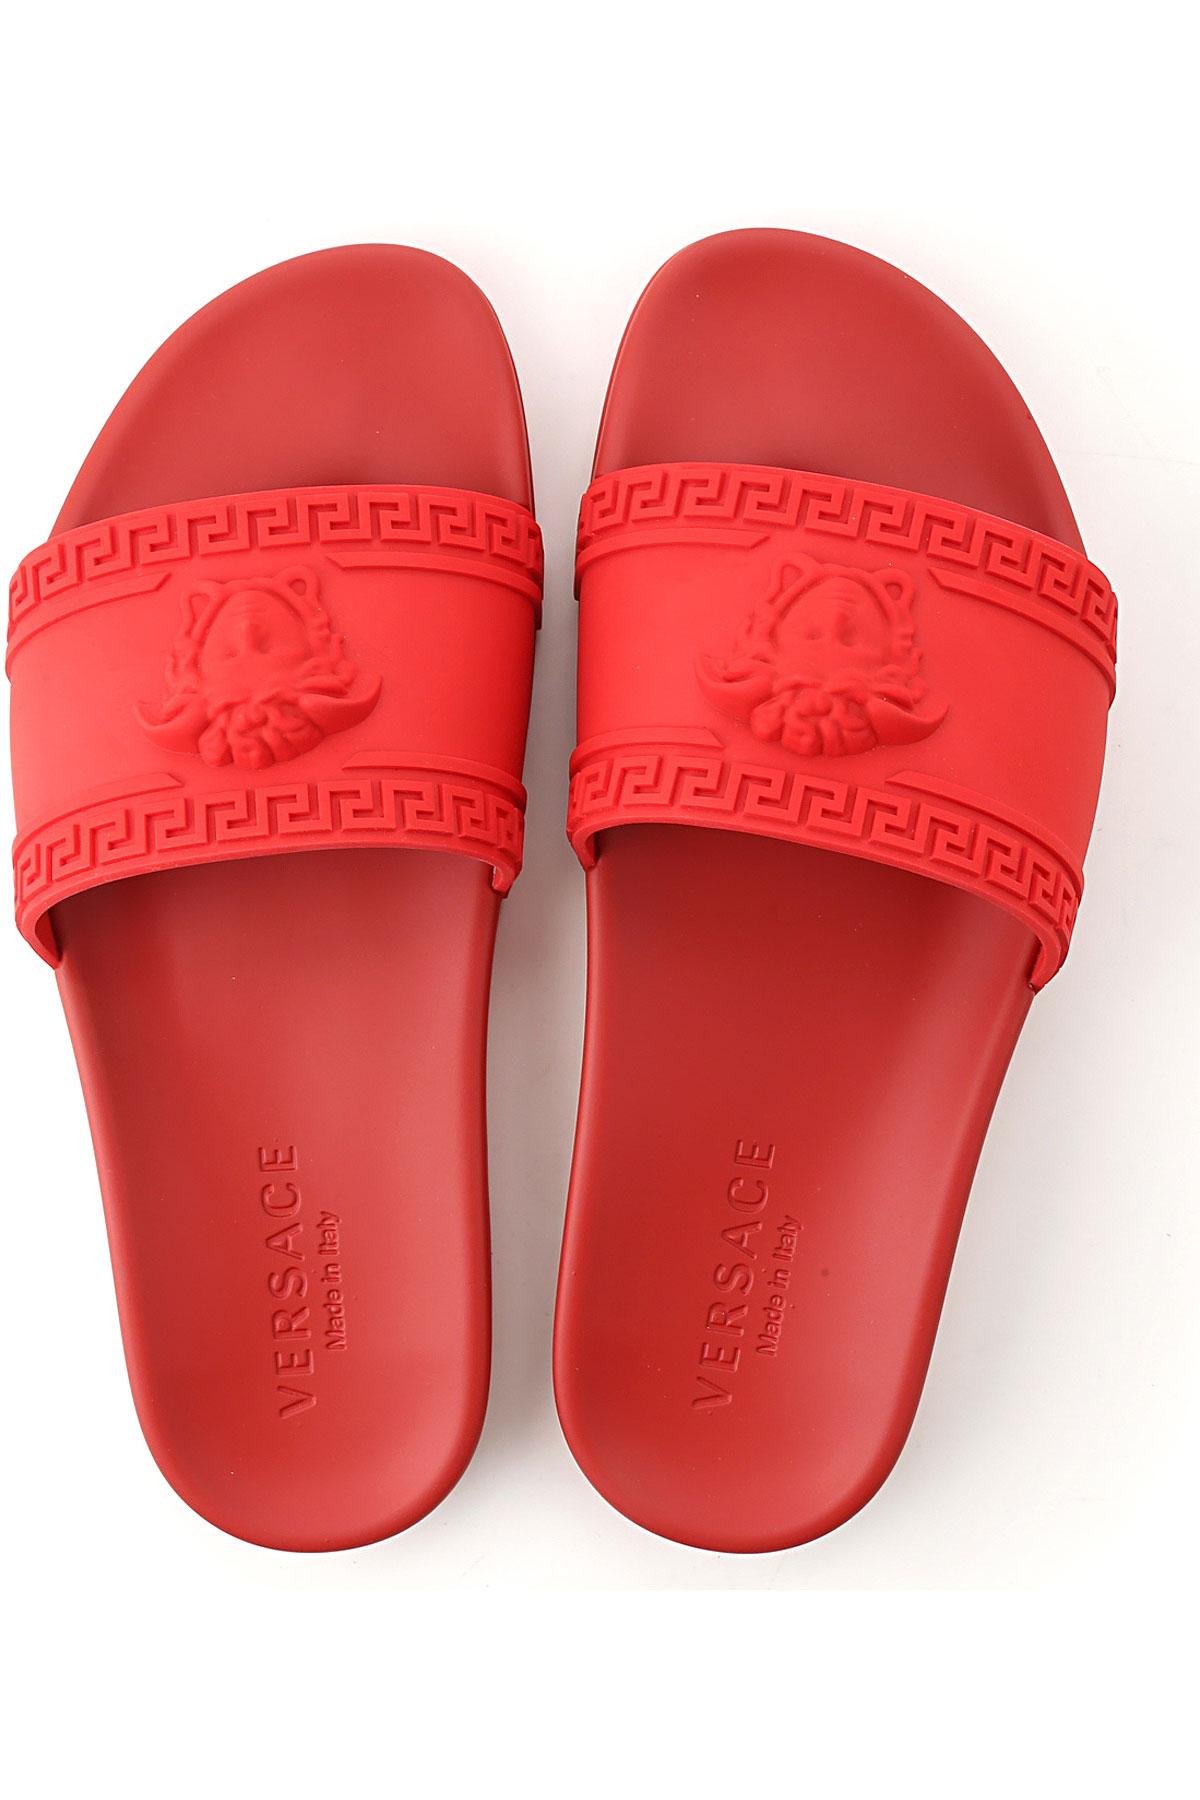 red versace flip flops